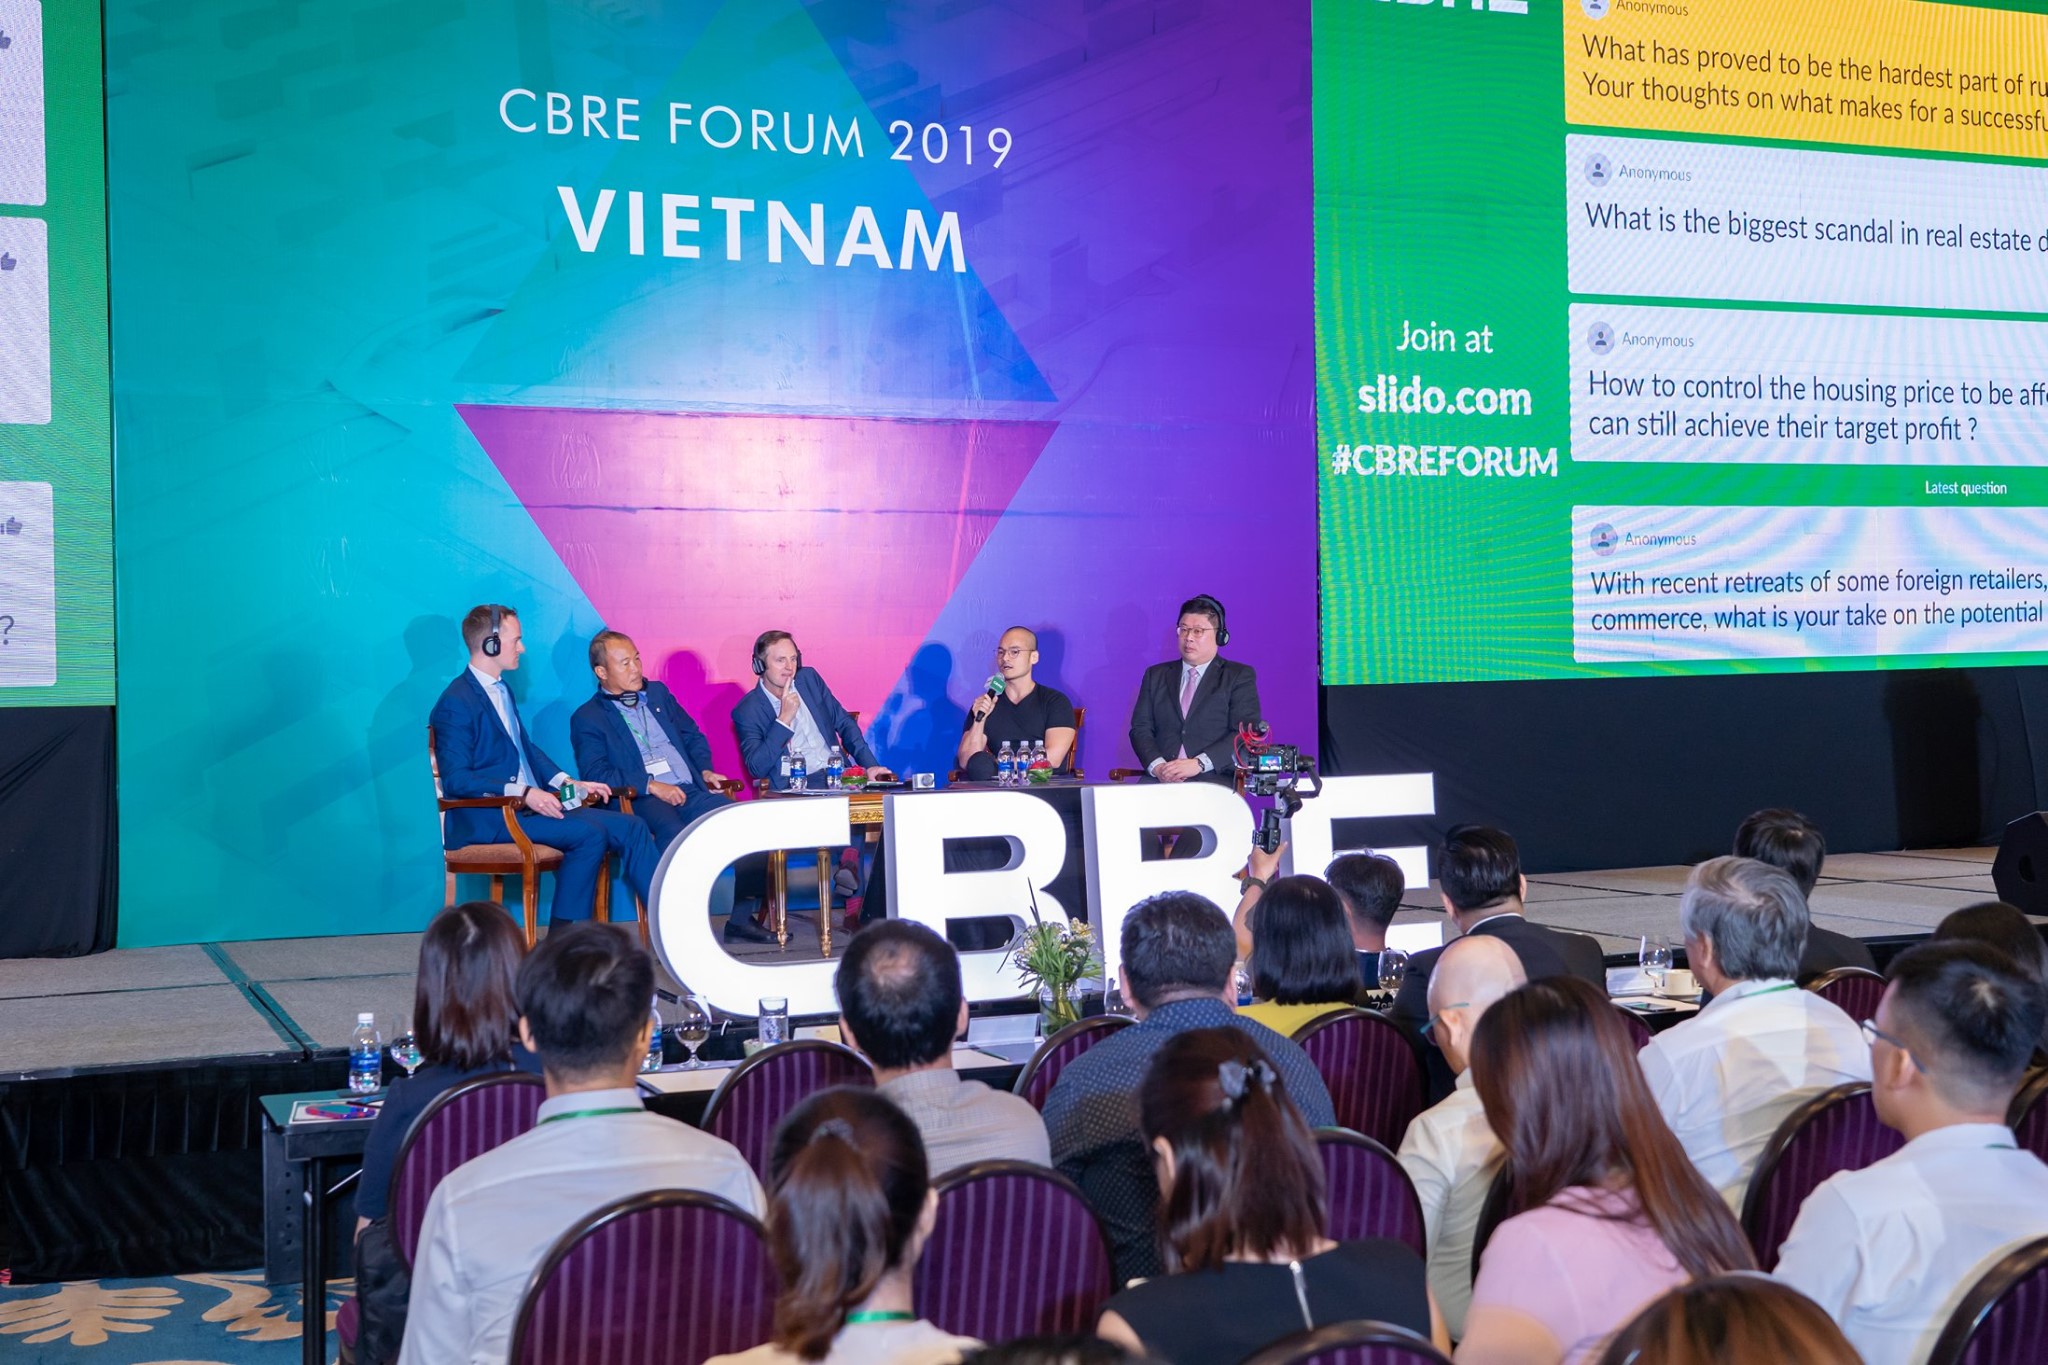 CBRE Forum 2019 in HCMC